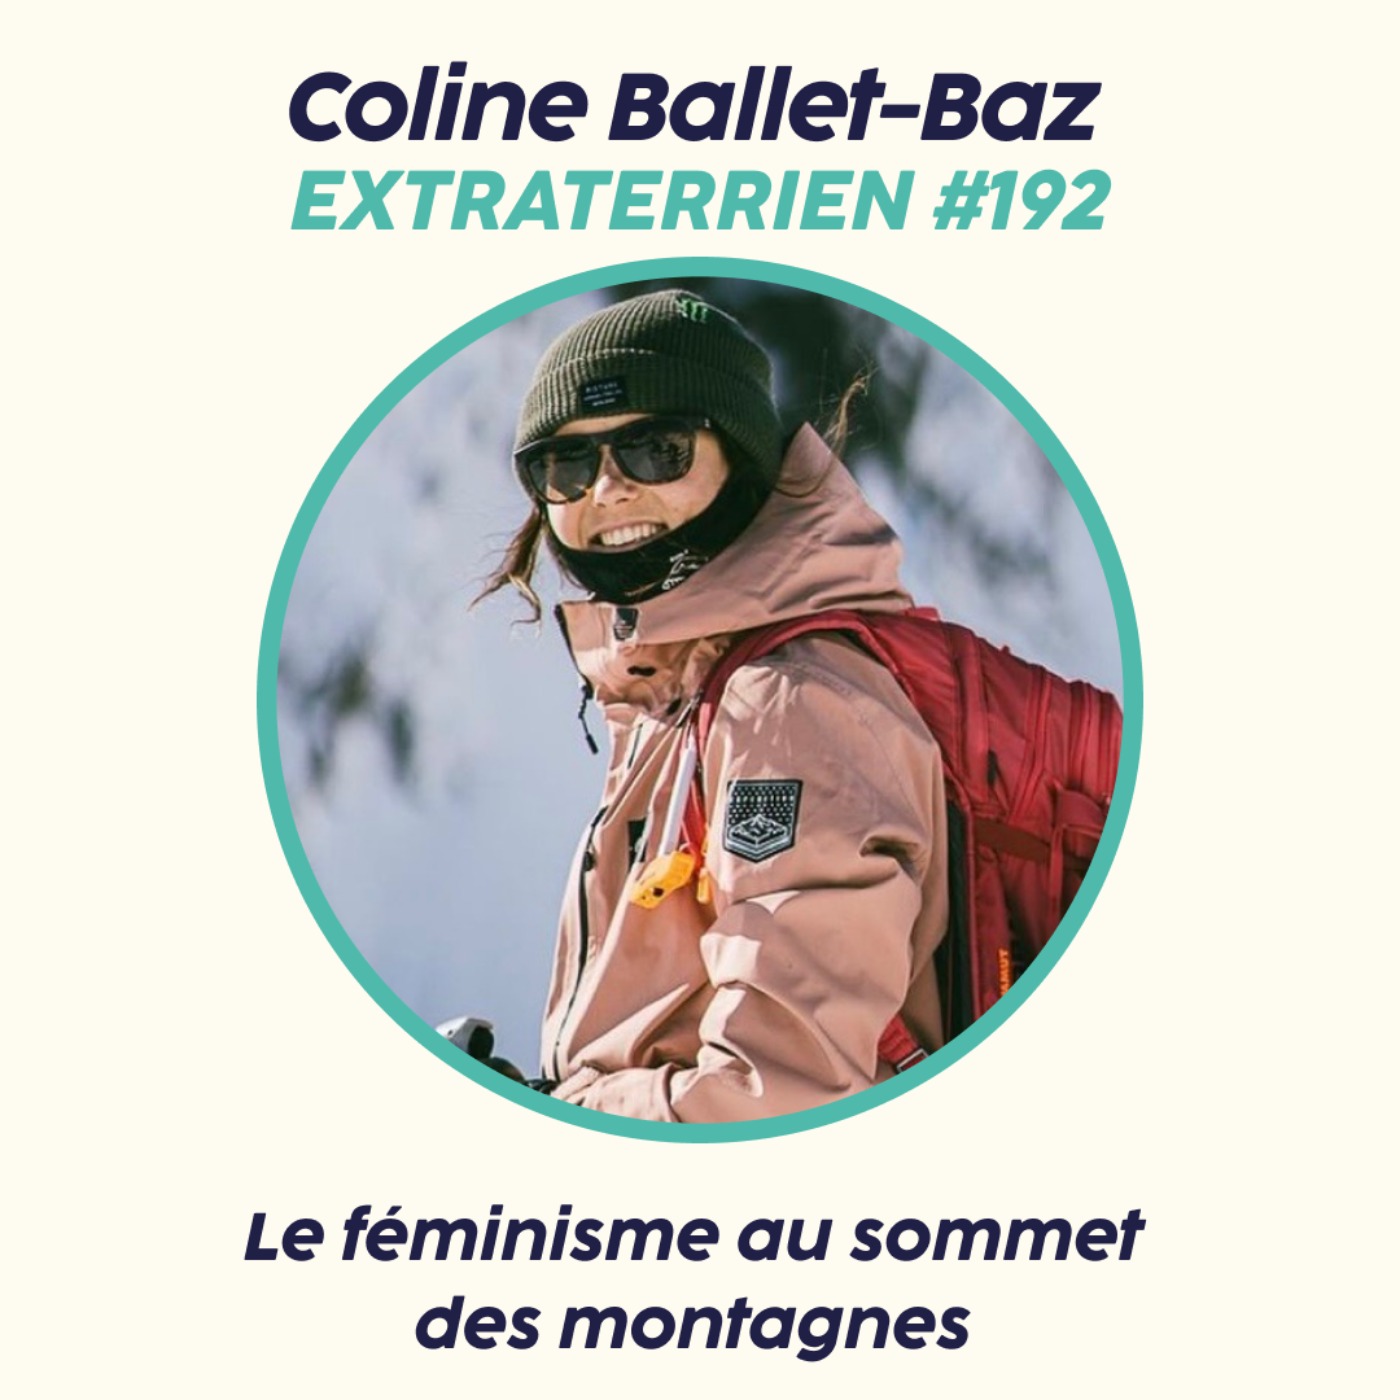 Coline Ballet-Baz - Le féminisme au sommet des montages